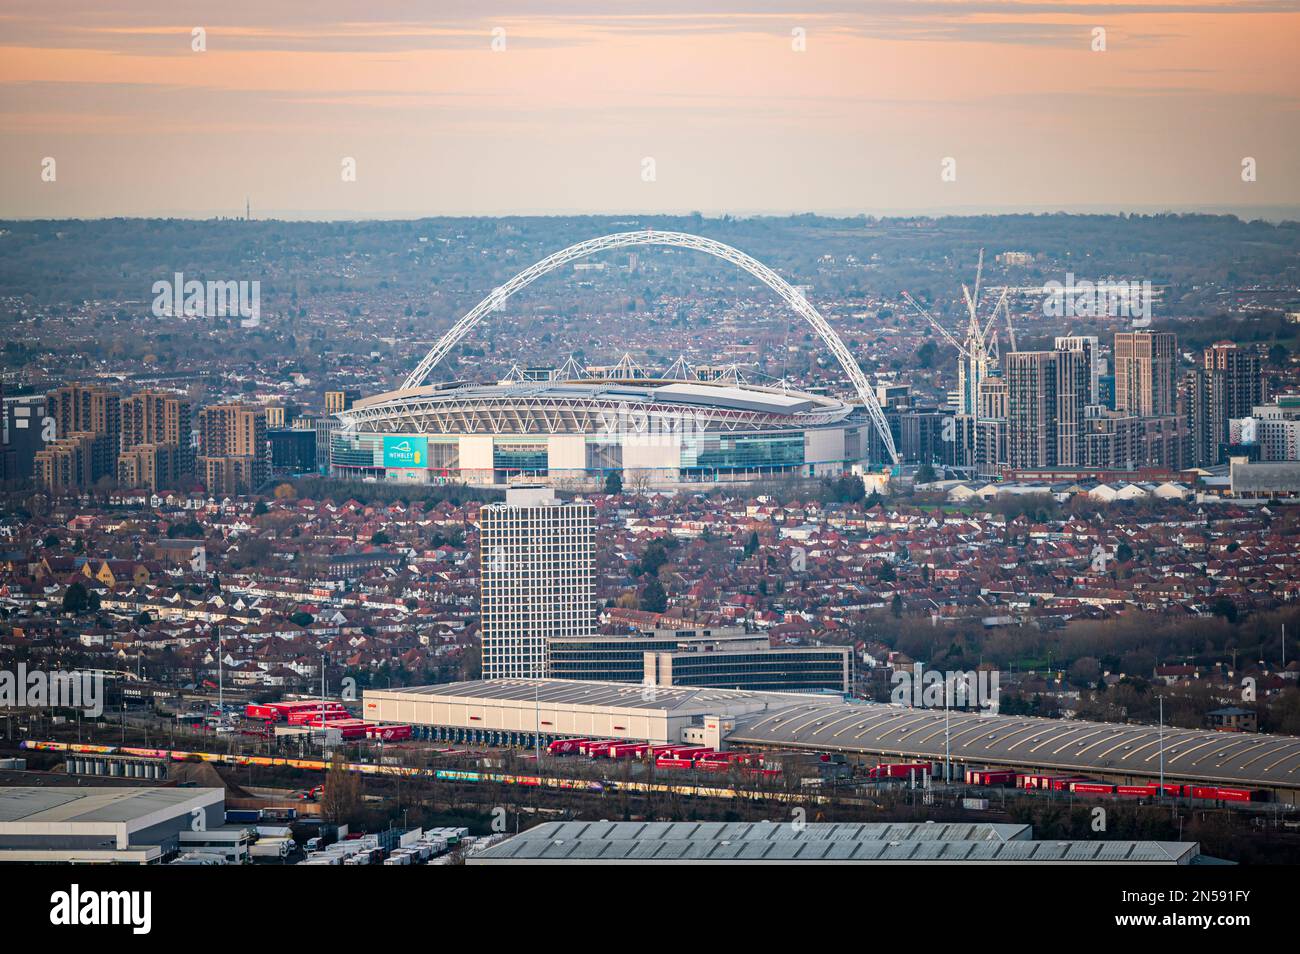 Le stade de Wembley, Londres Banque D'Images